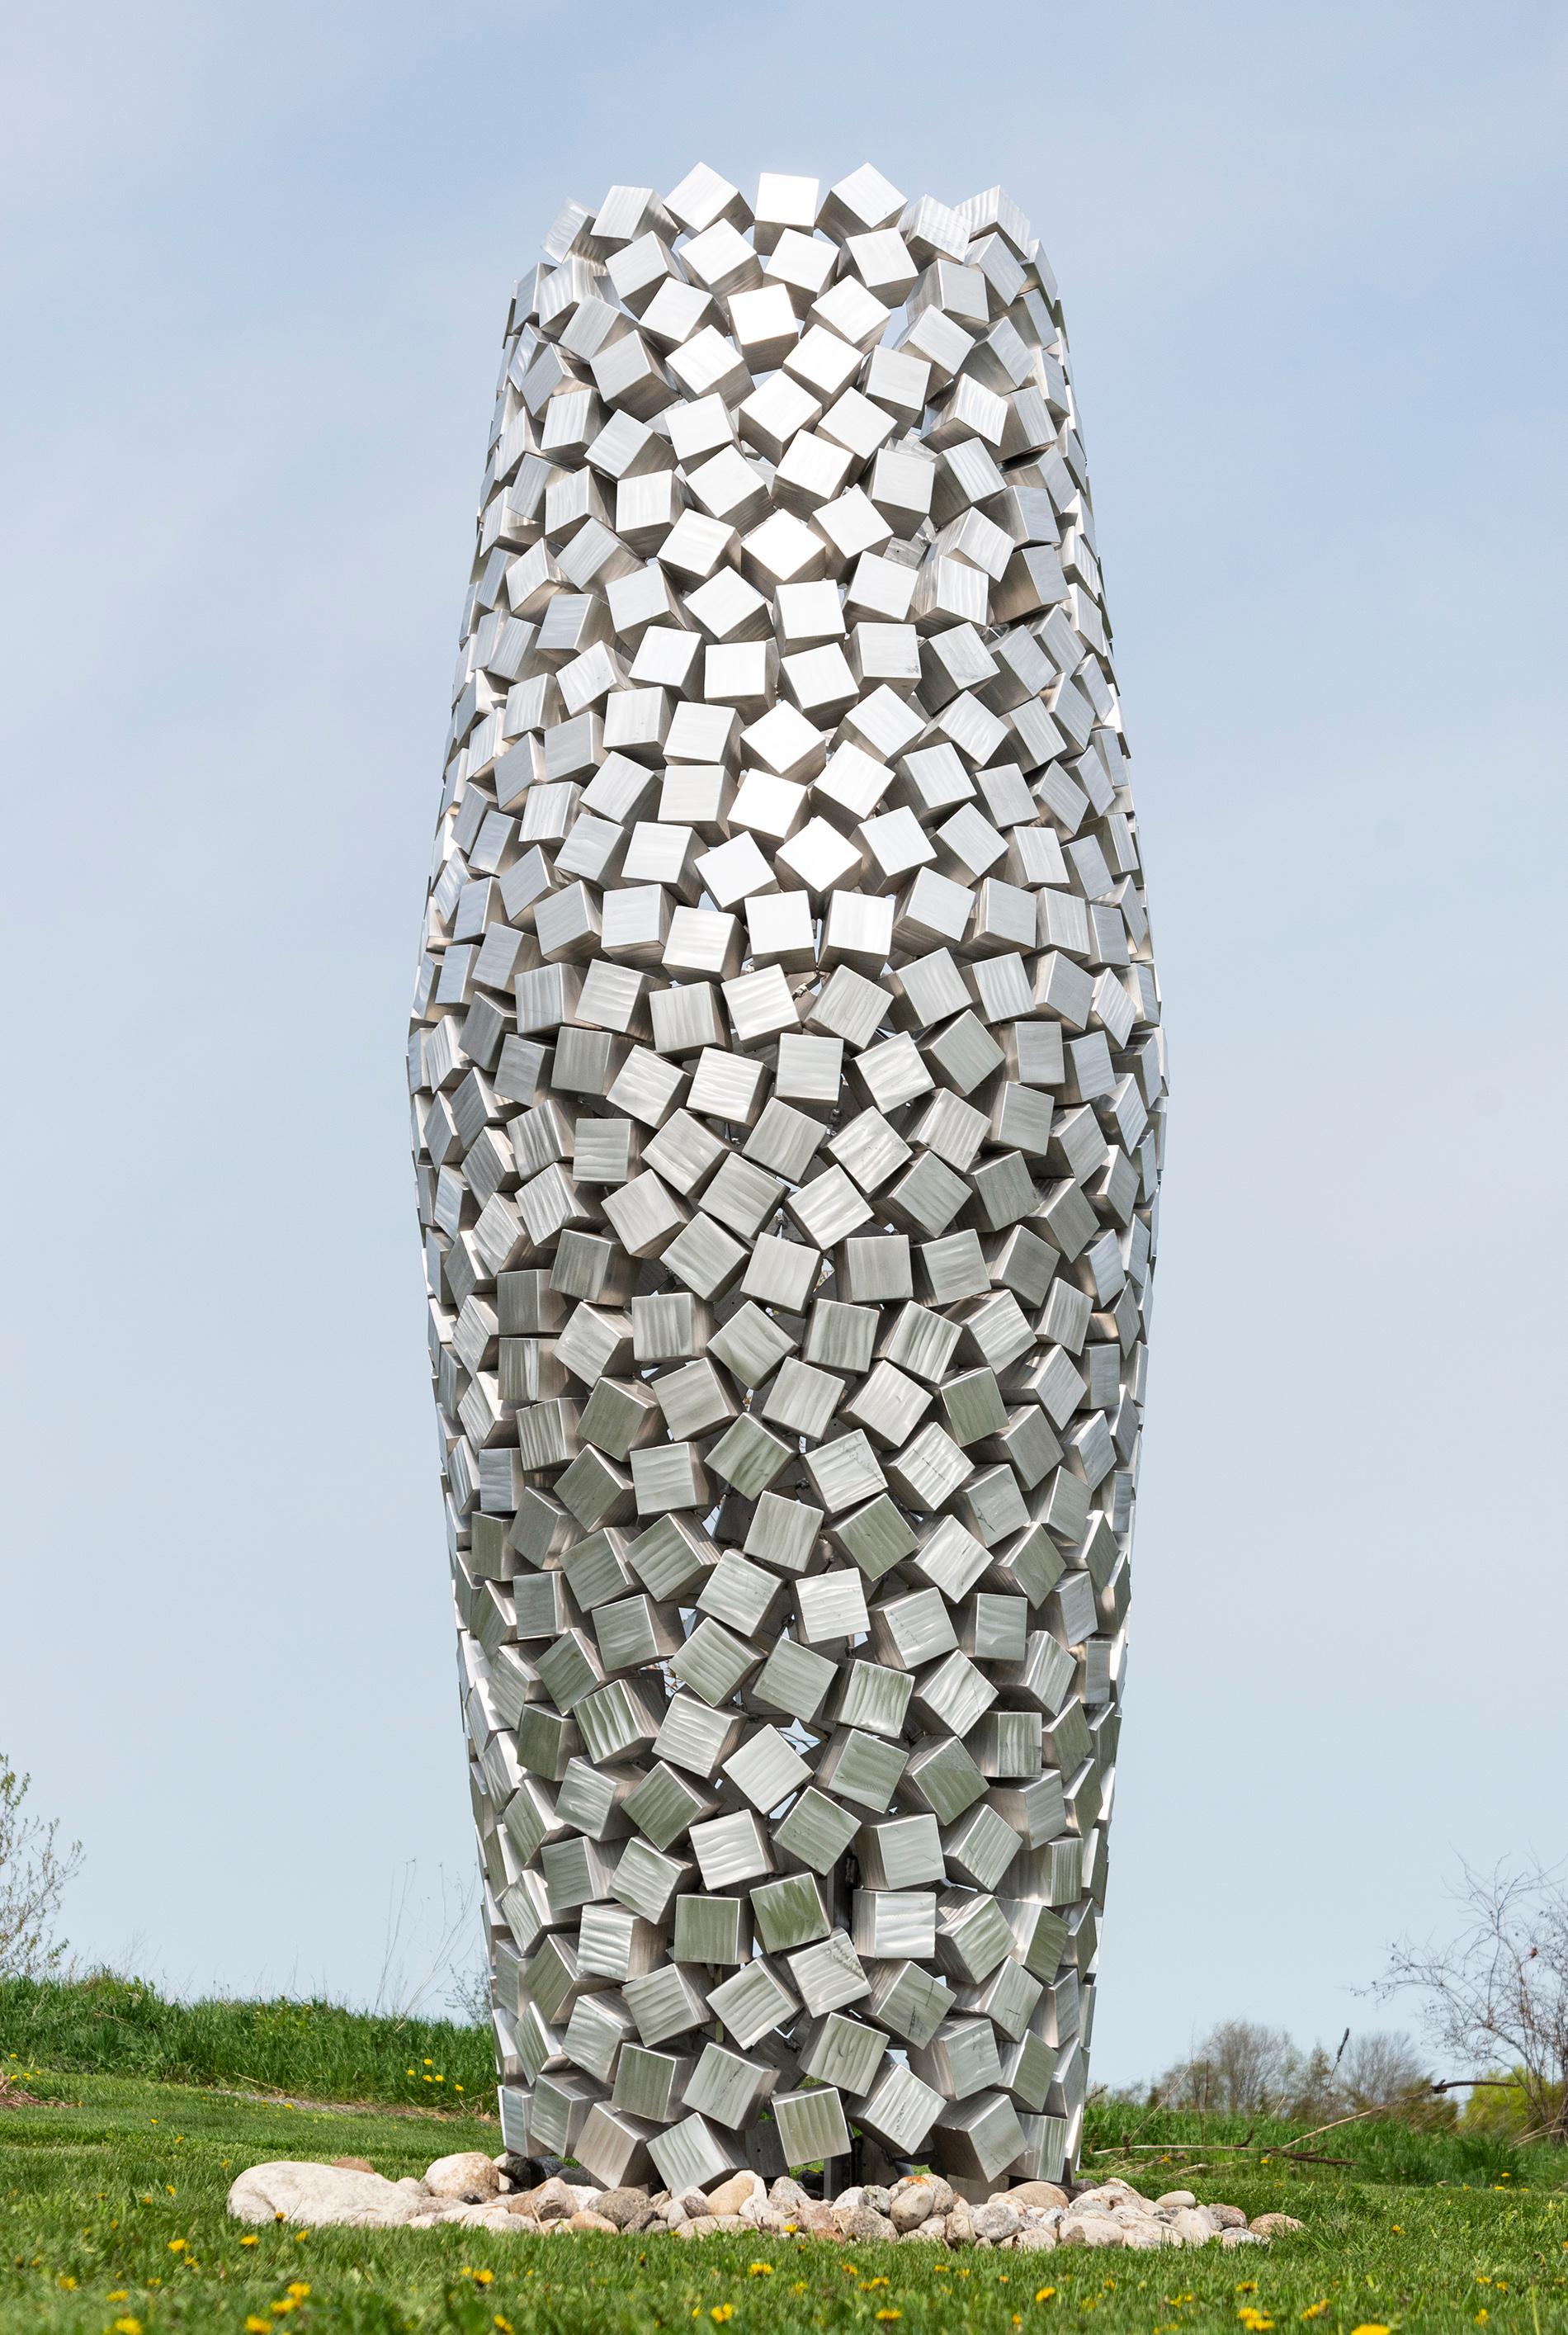 Abstract Sculpture Jean-Pierre Morin - Cones 690 cm de haut, sculpture d'extérieur géométrique abstraite en aluminium poli